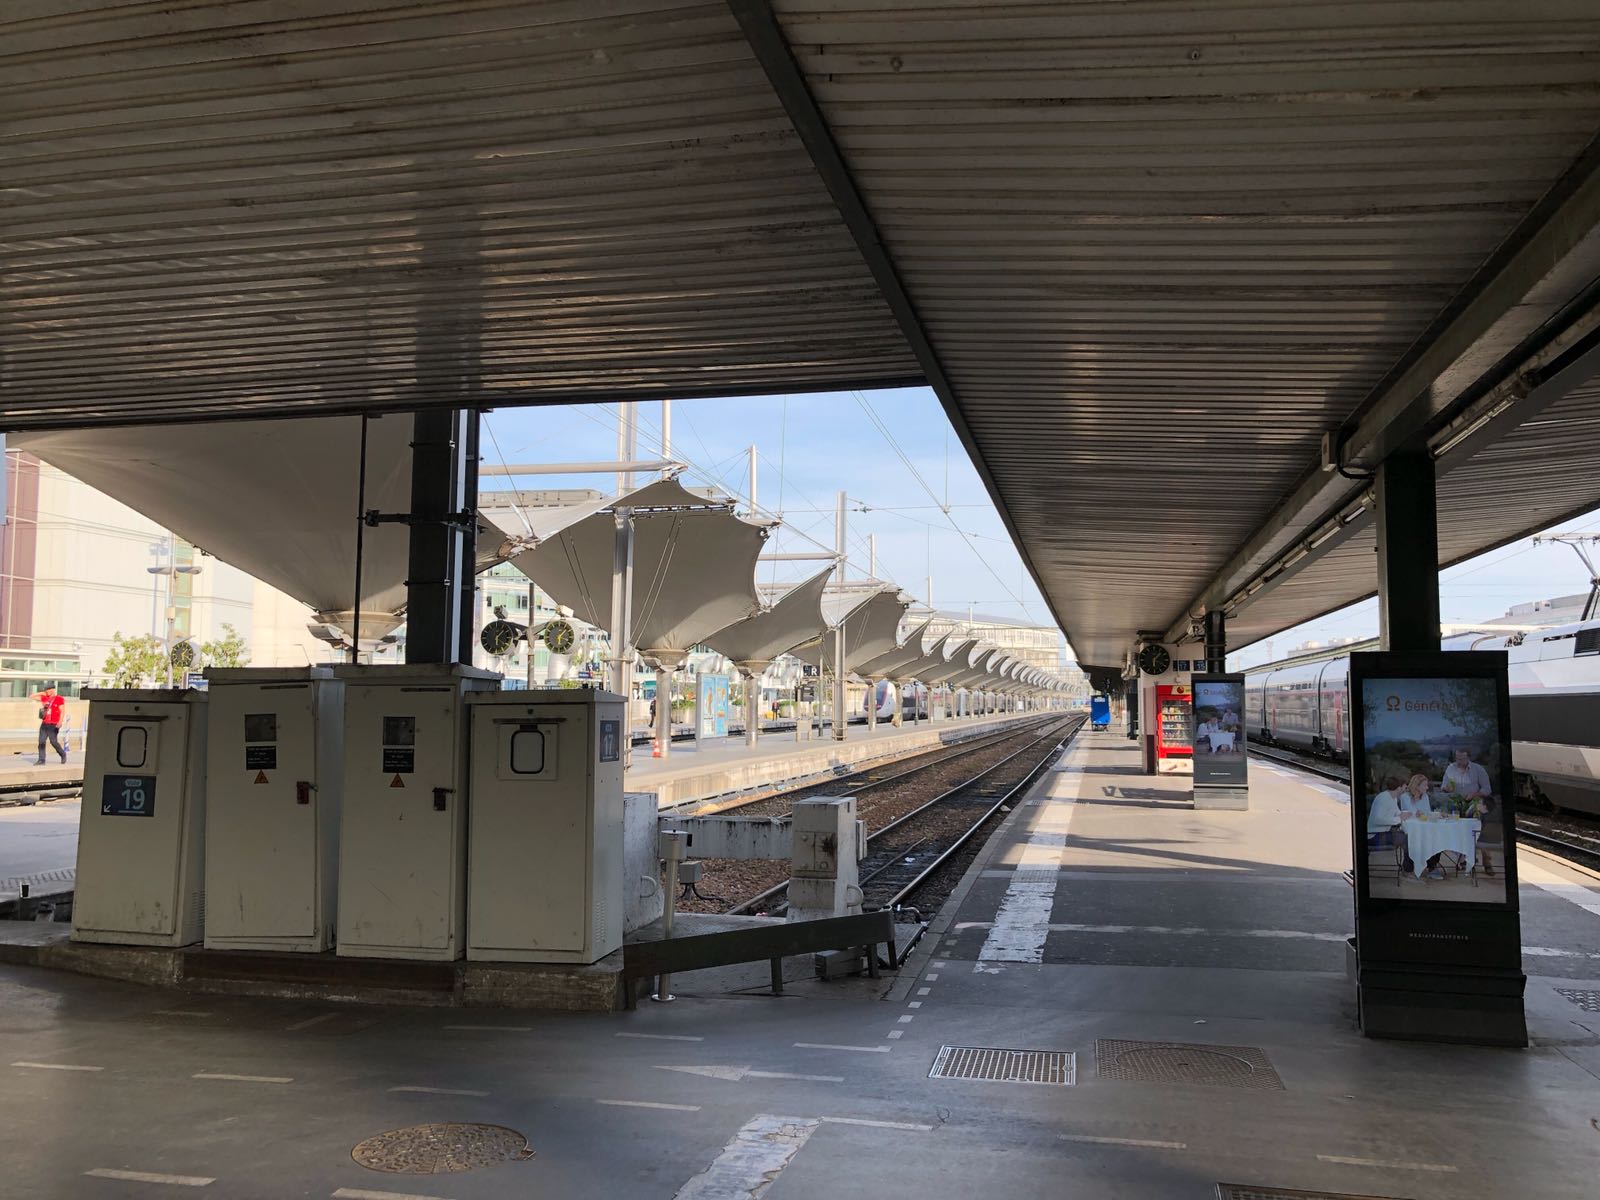 La gare St-Charles a été évacuée ce 19 mai 2018 en fin de matinée - phot TourMaG.com / JdL